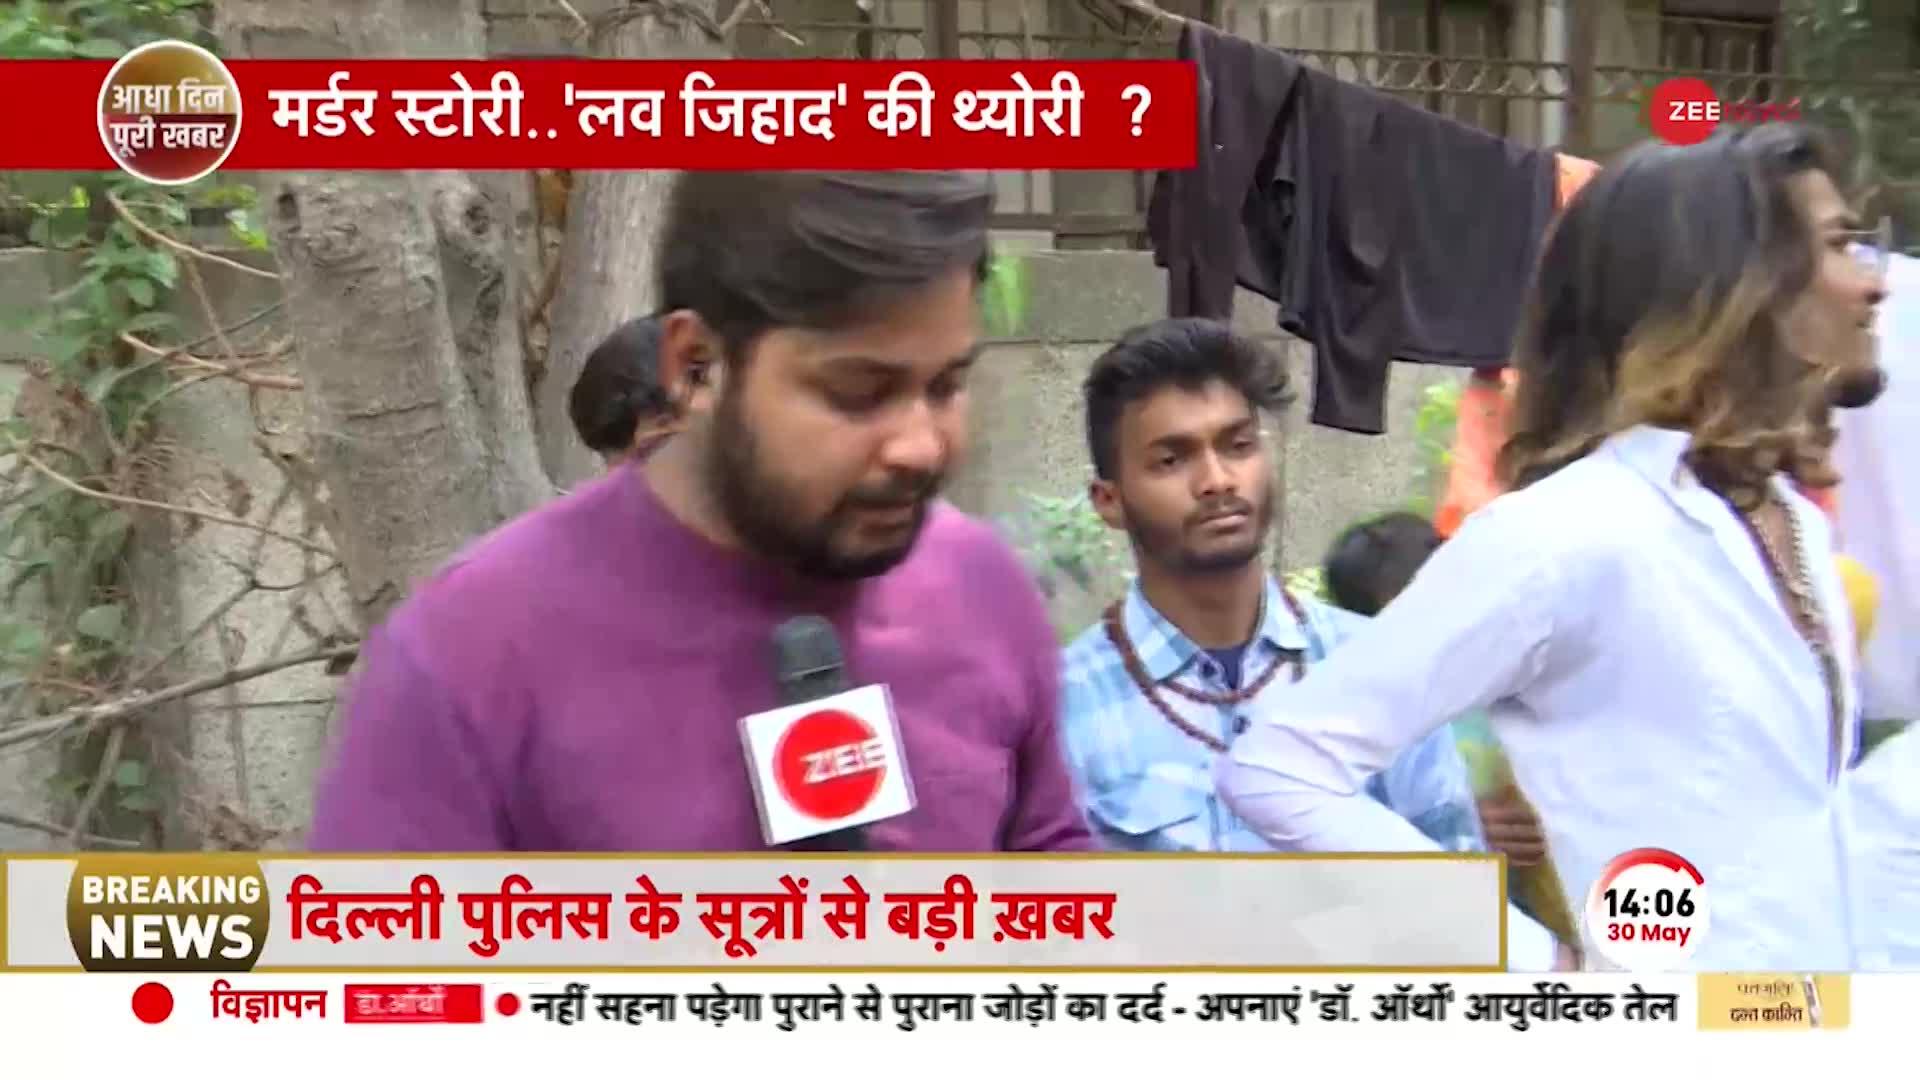 Delhi Murder Case: Sahil के आरोपों पर Jhabroo बोला, 'उसने तो मरना है, मुझे साथ में लेकर मरना चाहता'